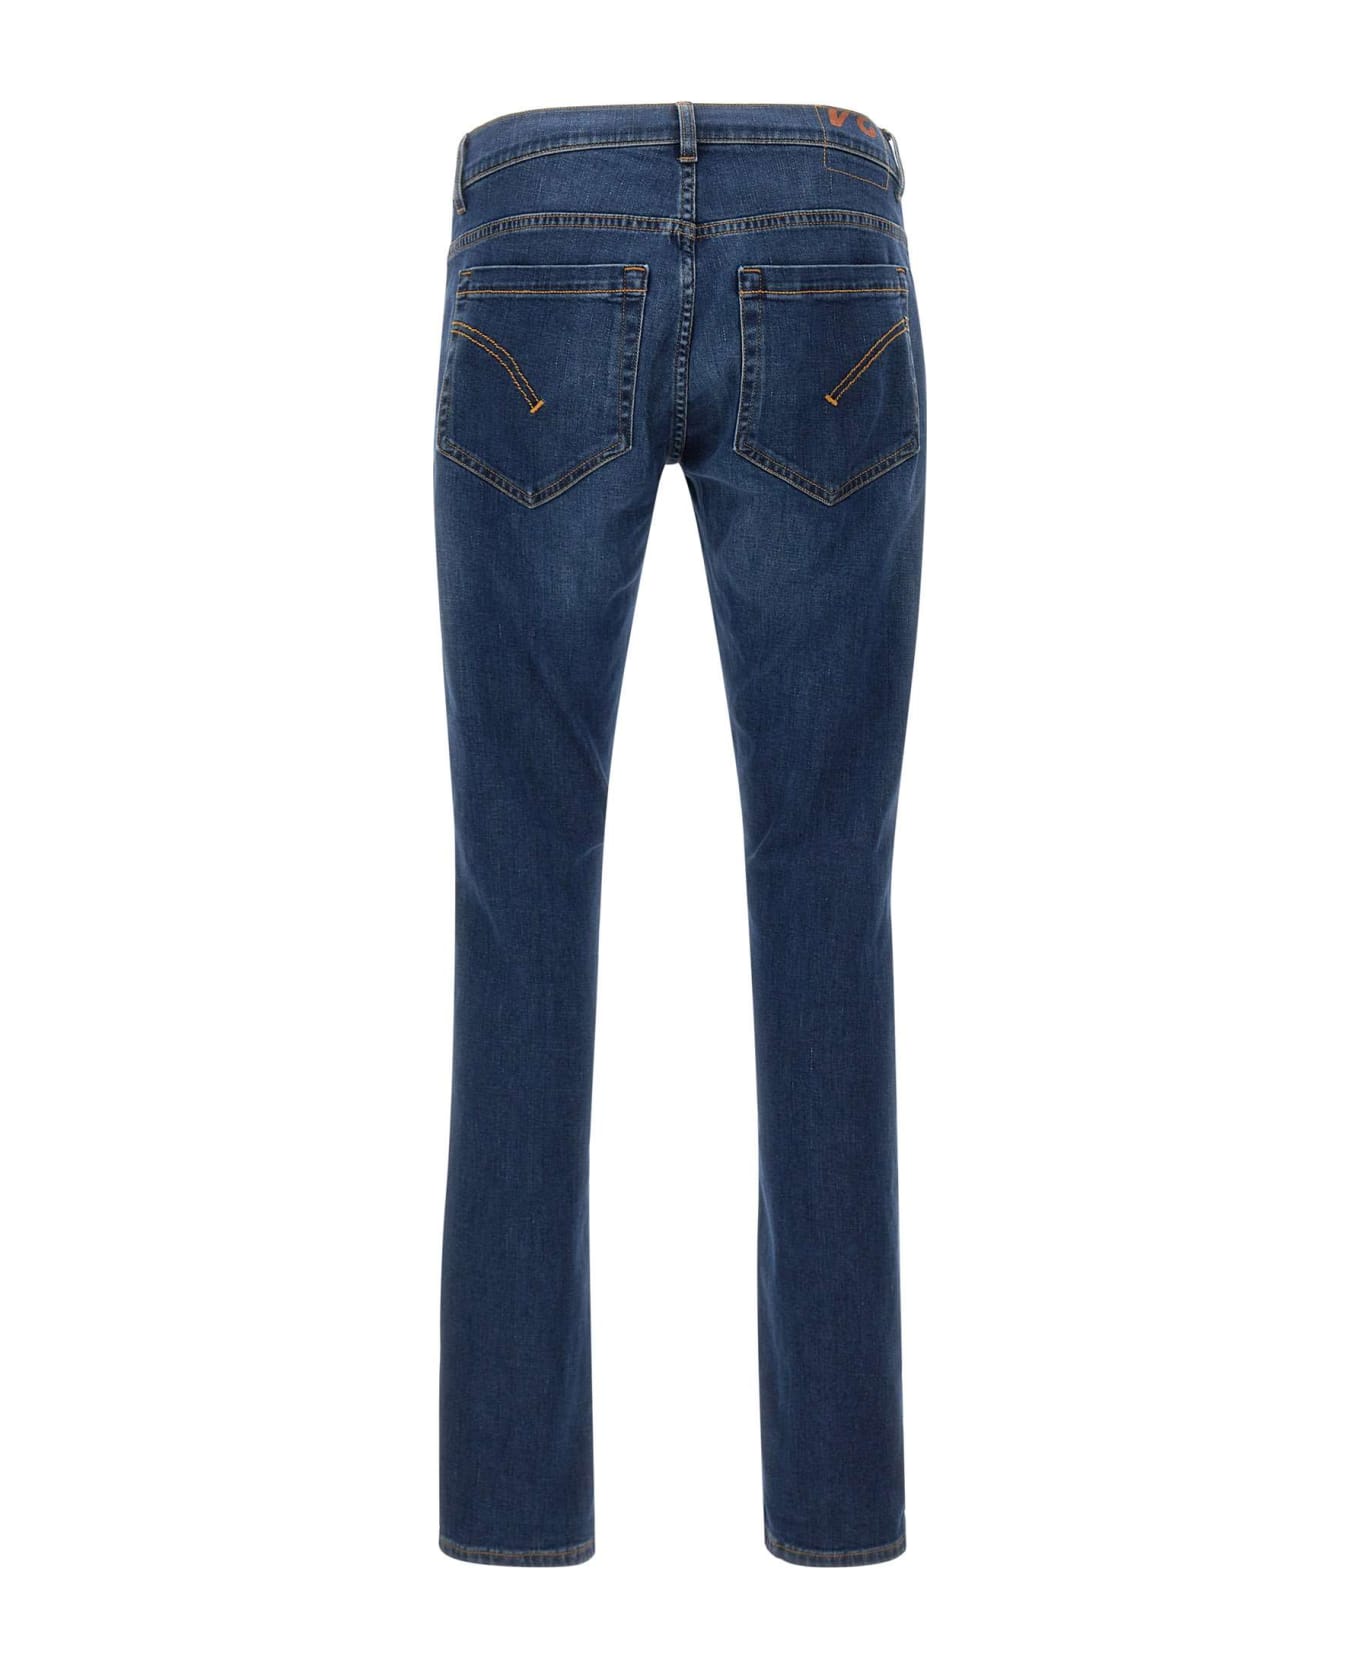 Dondup George Skinny Fit Jeans In Blue Stretch Denim - Blue